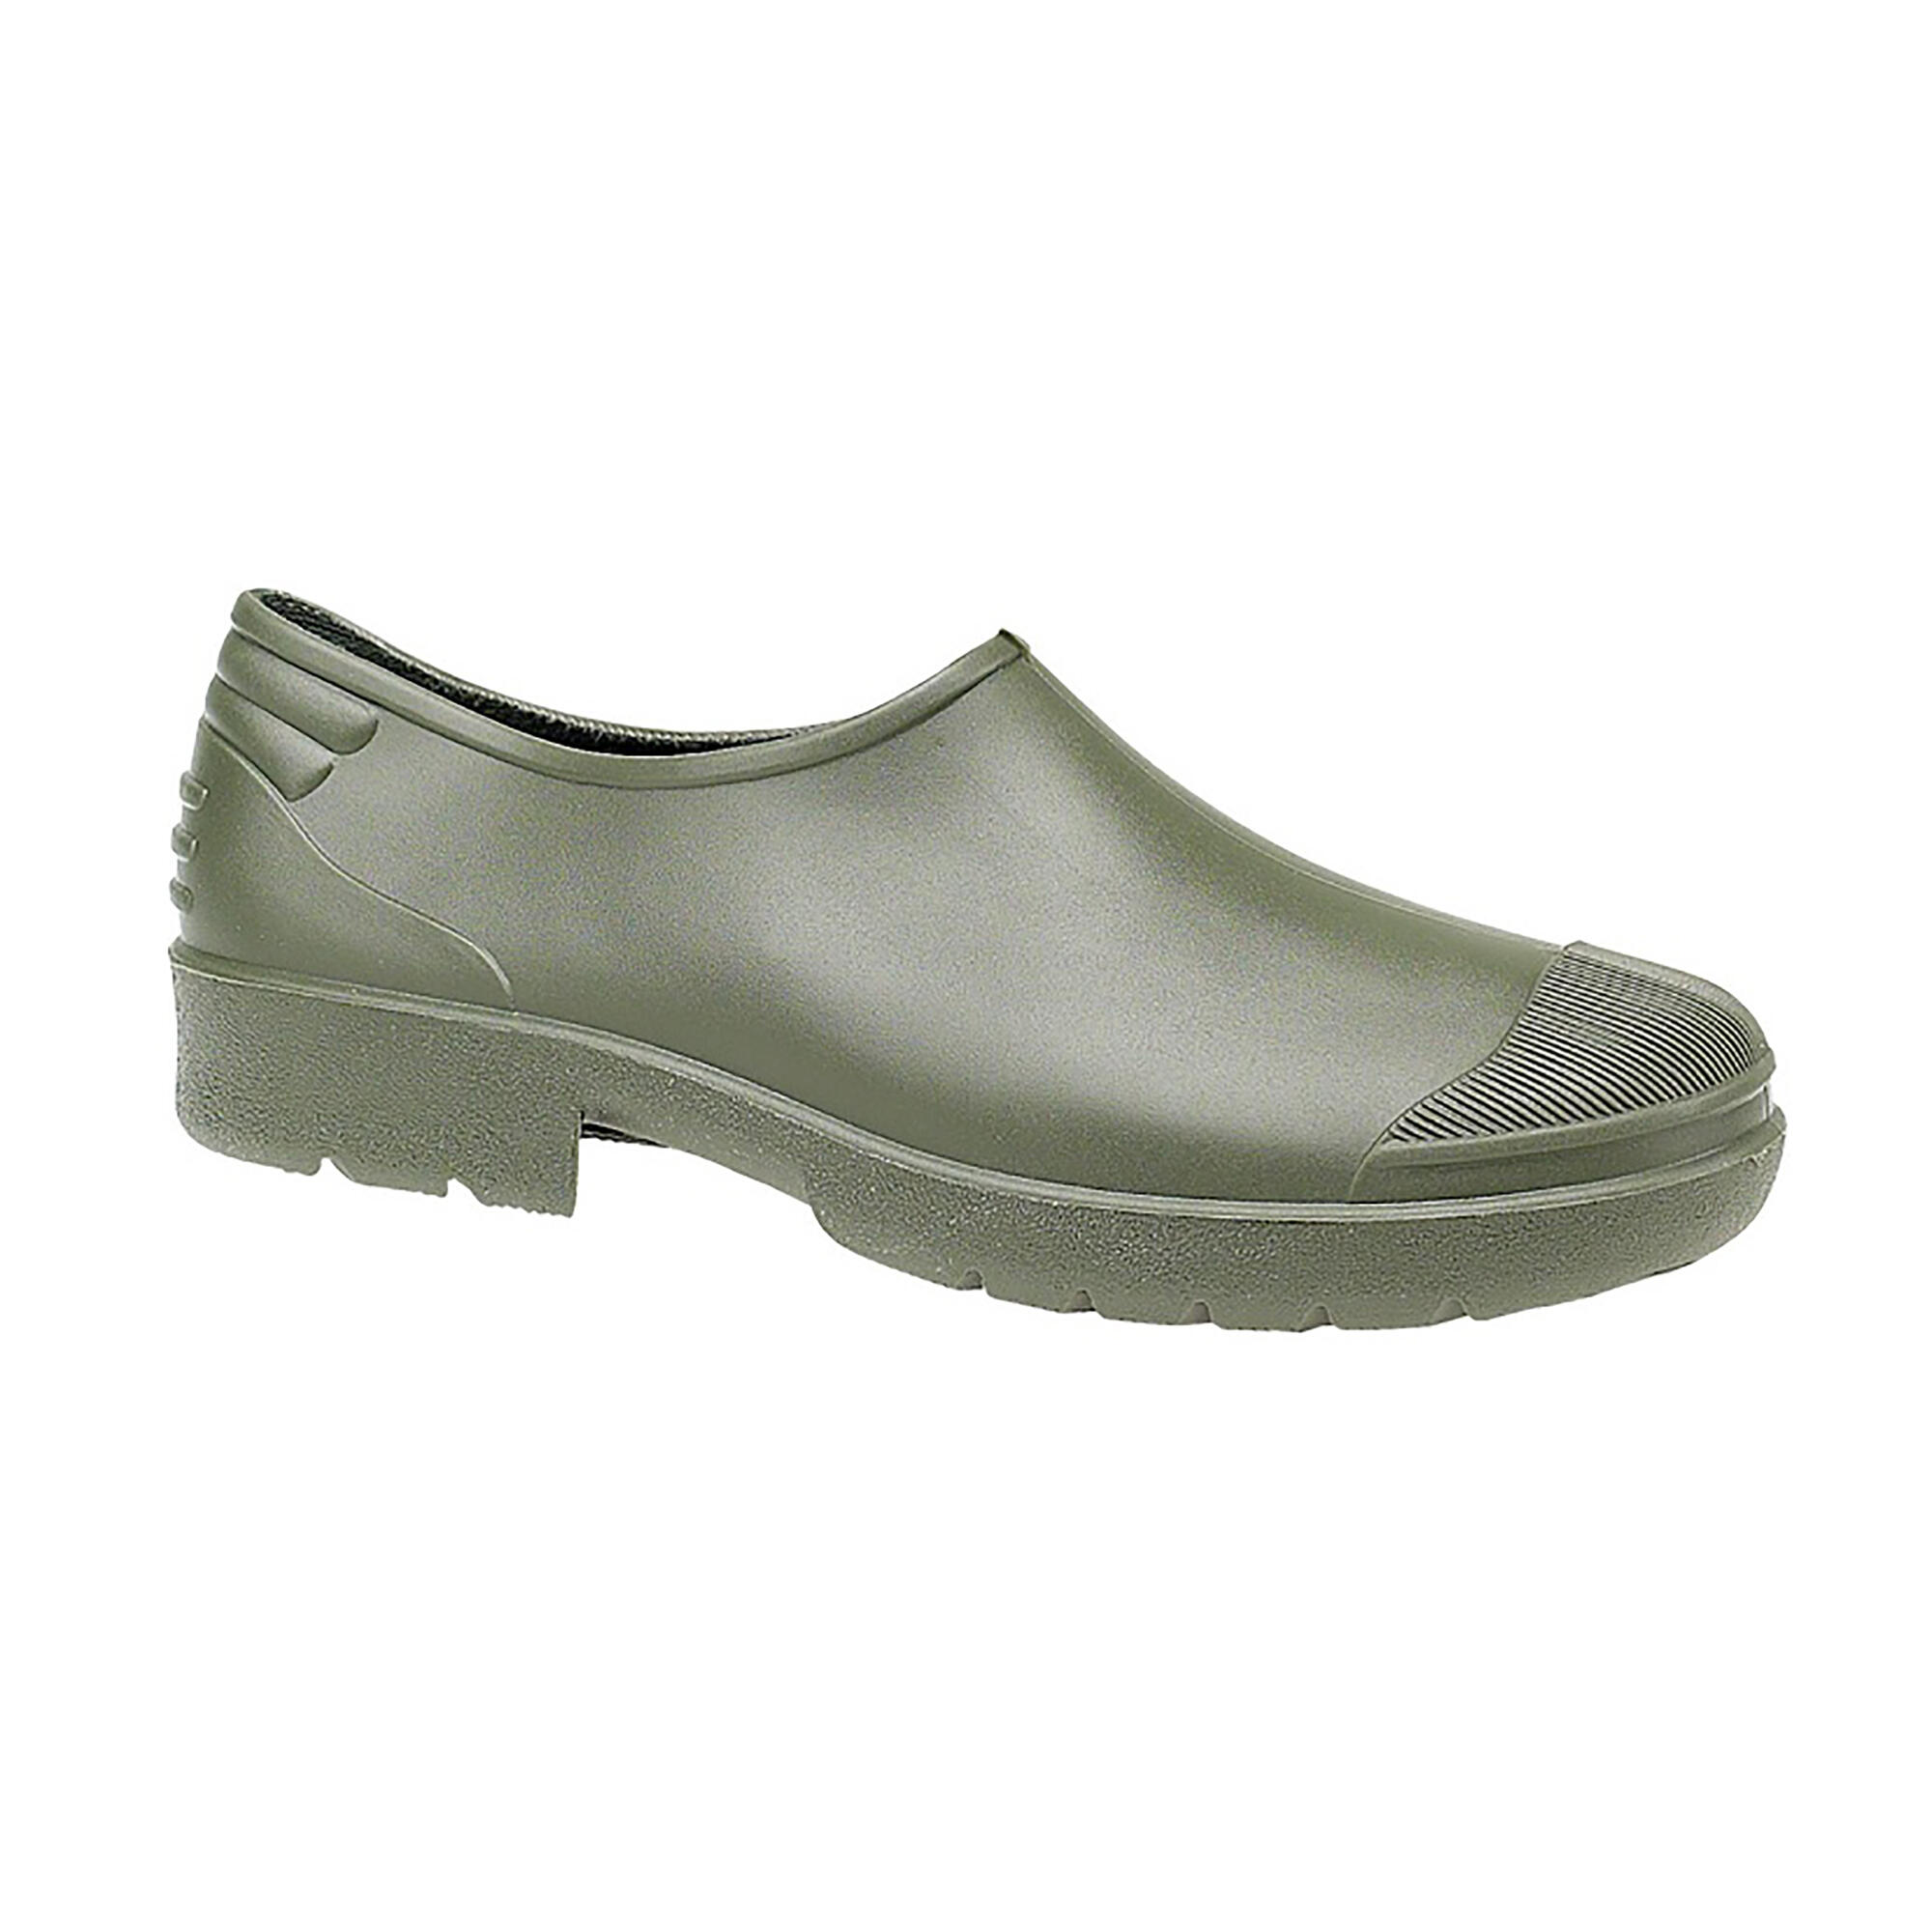 Dikimar Primera Gardening Shoe / Mens Shoes / Garden Shoes (Green) 2/3